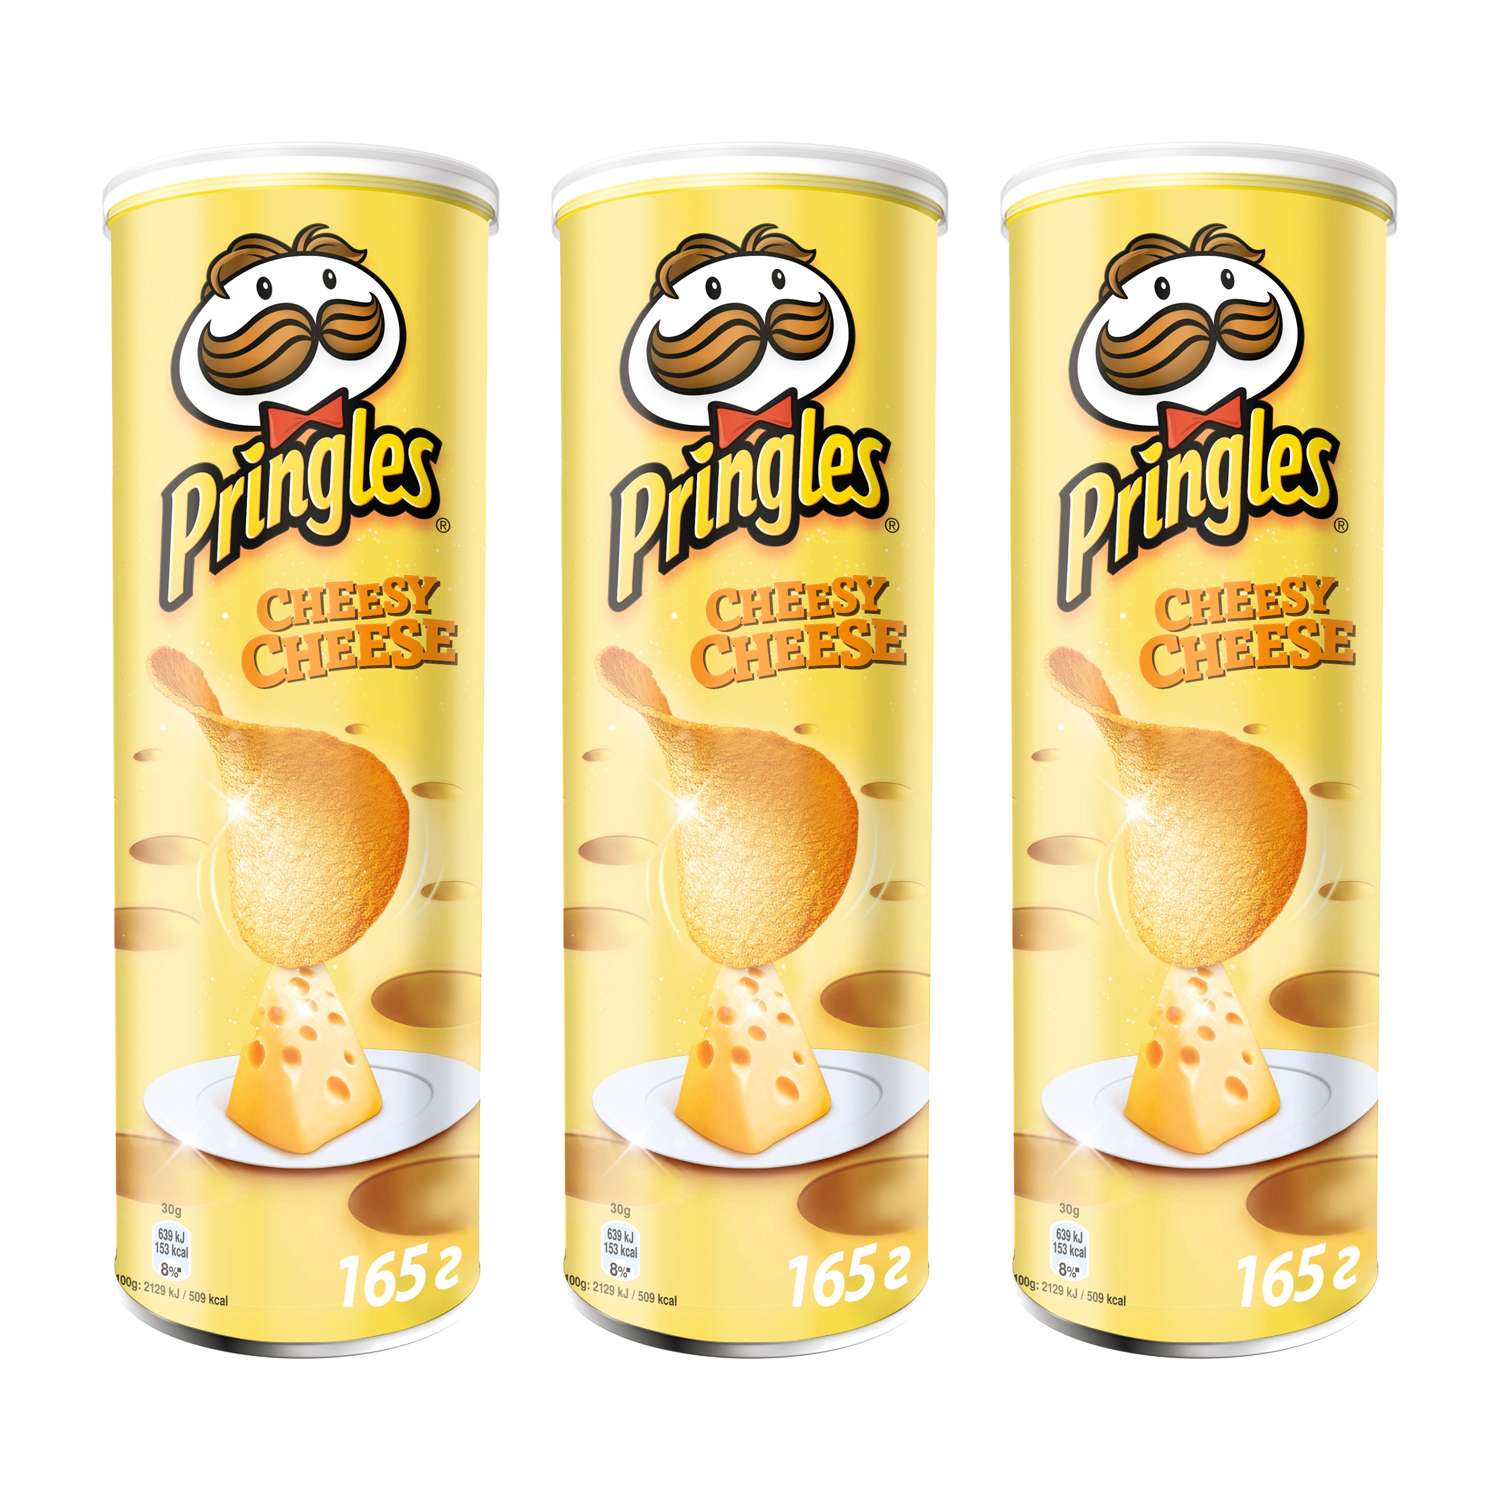 Картофельные чипсы Pringles Набор из 3 штук по 165 г Сыр - фото 1